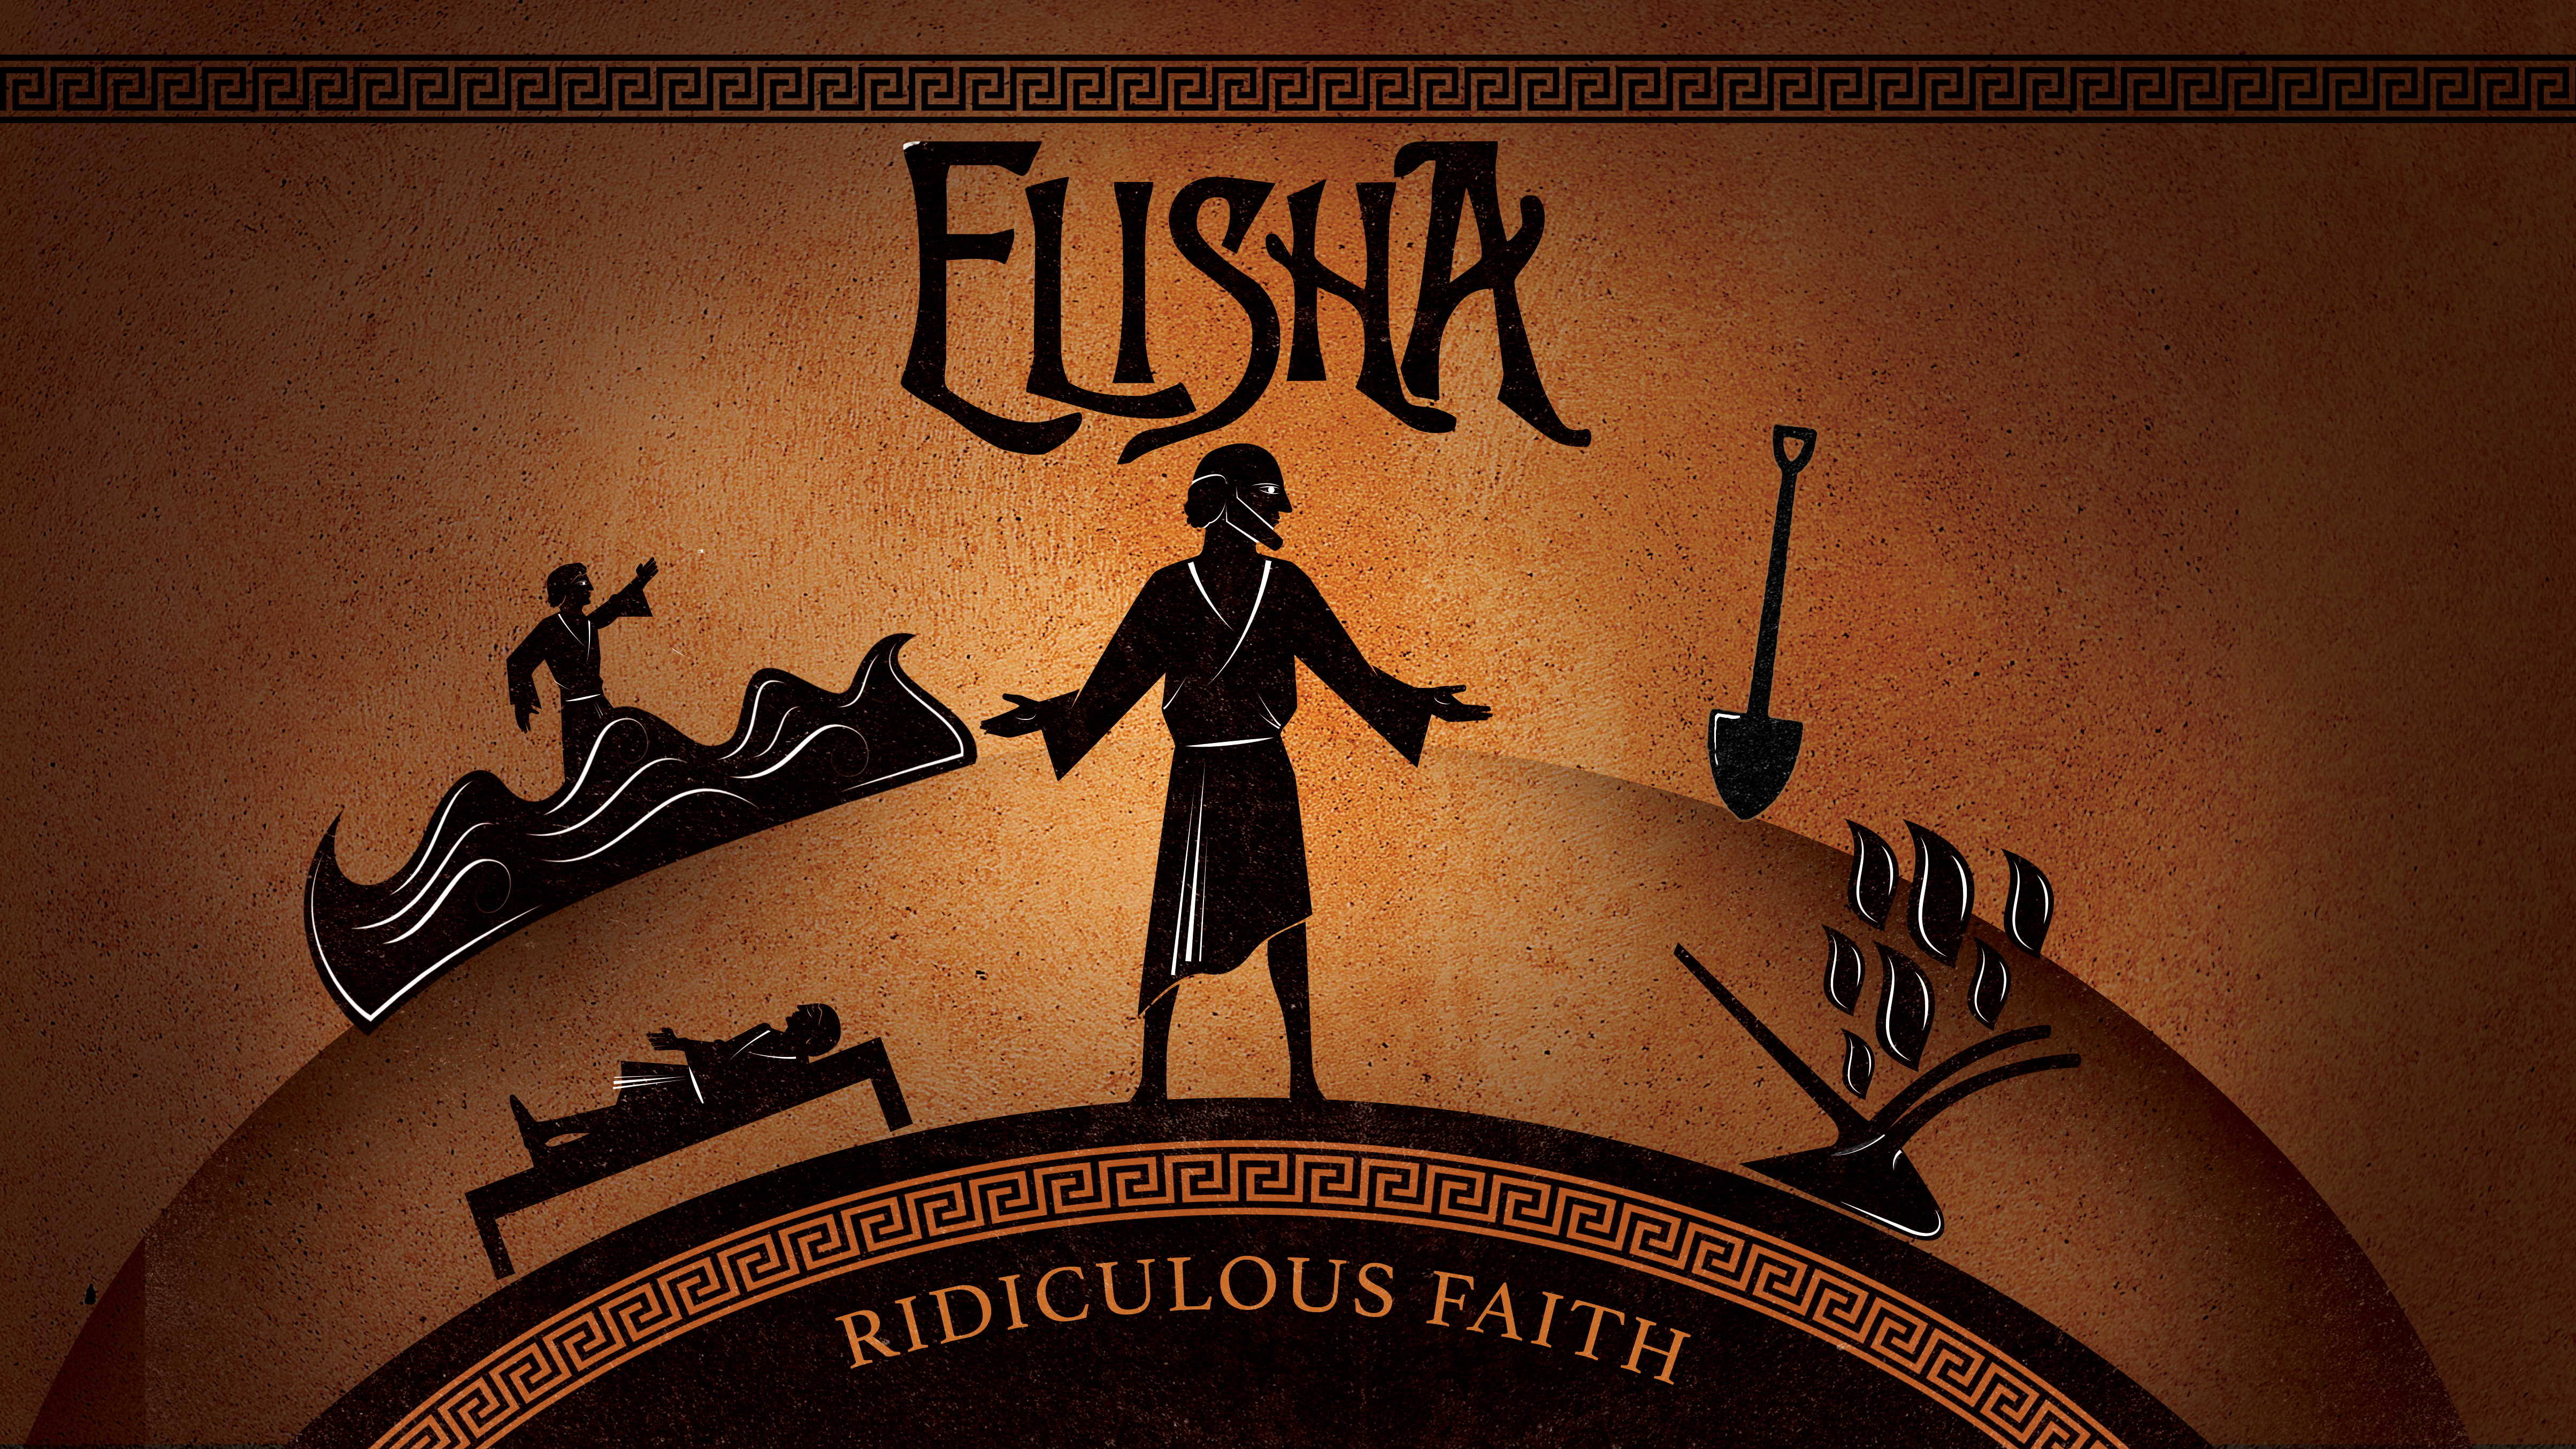 Elisha: Ridiculous Faith… Knock Knock Image